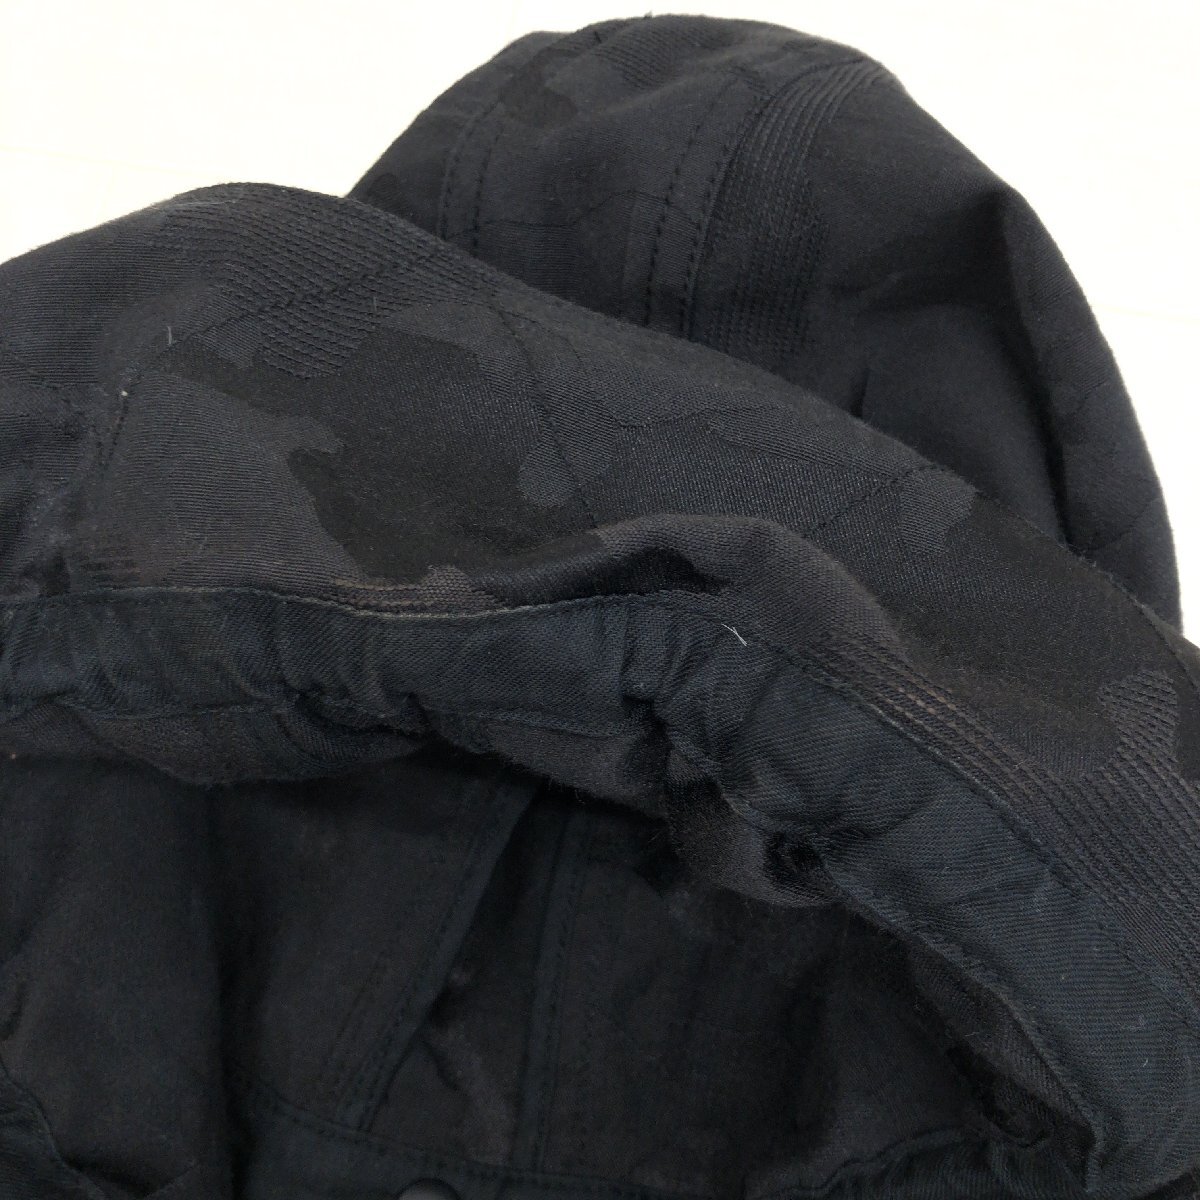 HIROKO BIS ヒロコビス 総柄 フーデット ベスト 11(L) 黒 ブラック ジャケット 羽織り 国内正規品 レディース 女性用 ヒロココシノの画像8